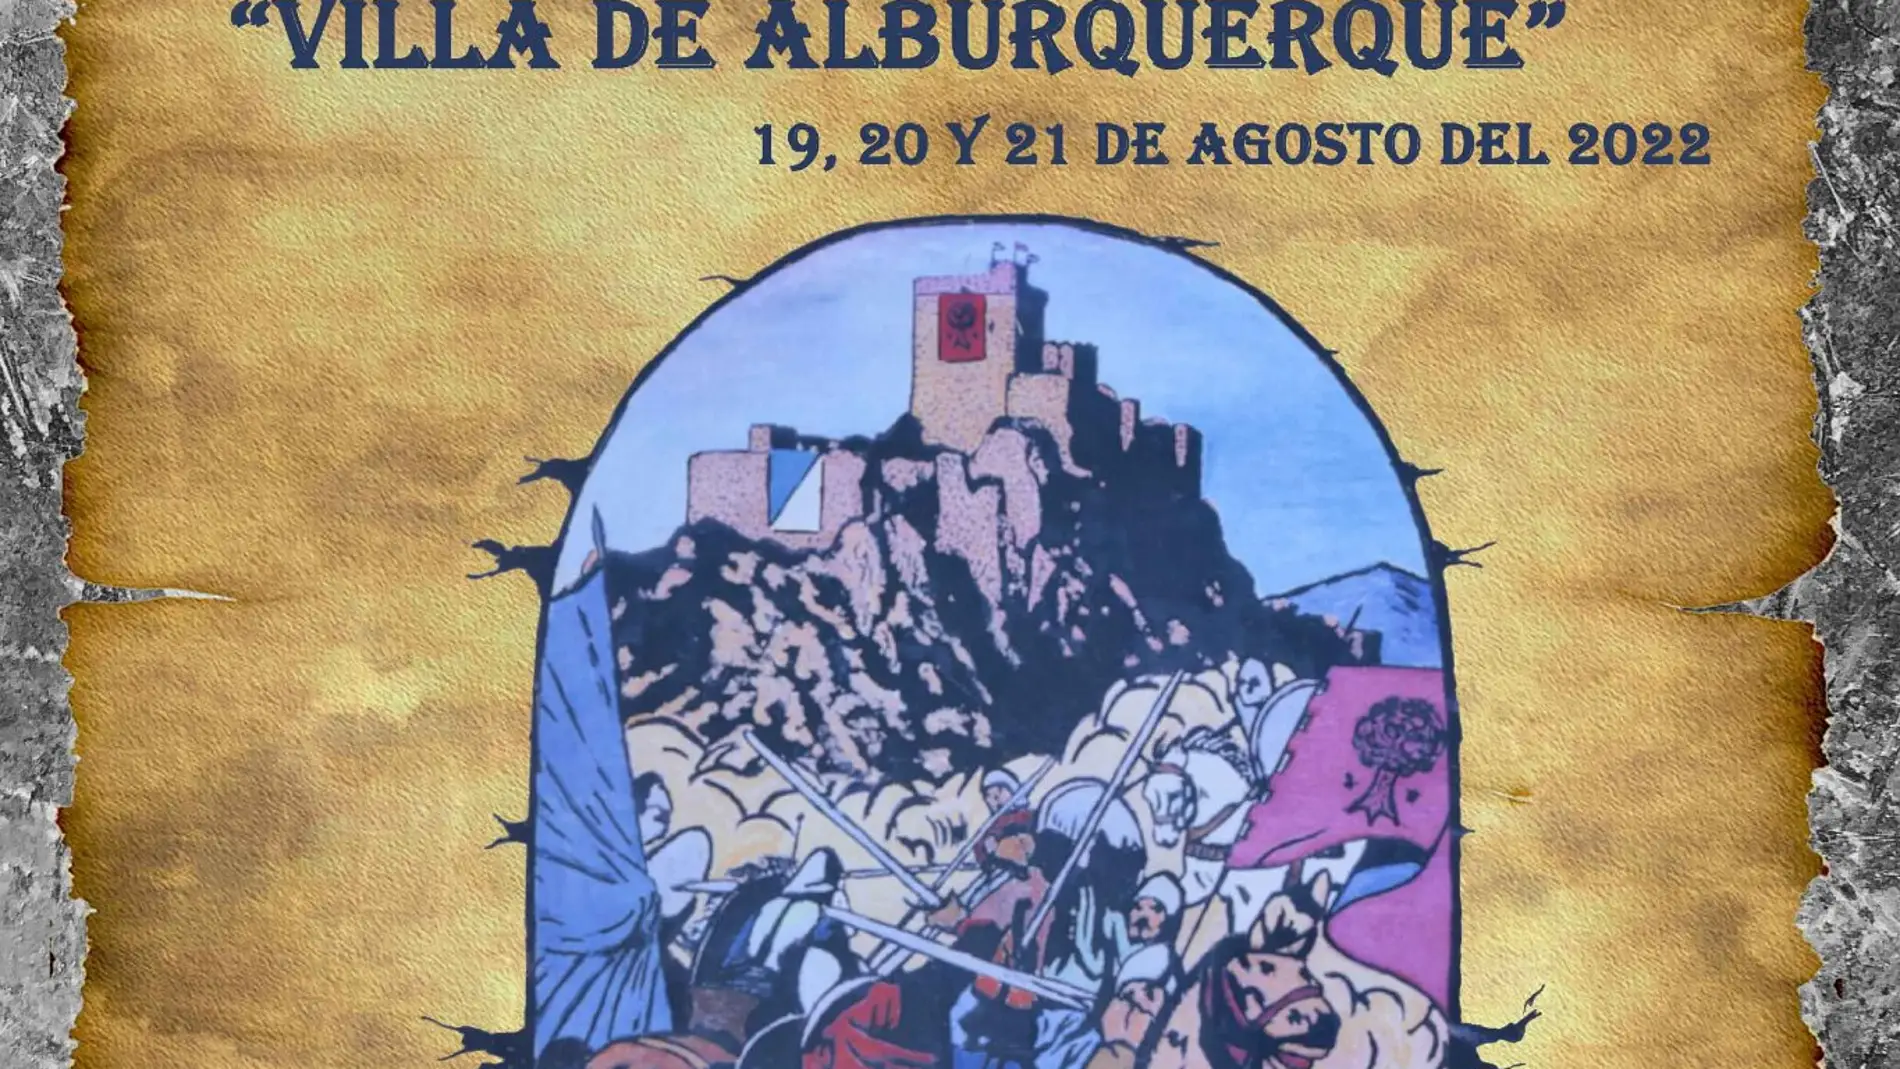 Alburquerque celebra su XXVII Festival Medieval "Villa de Alburquerque" los días 19, 20 y 21 de agosto